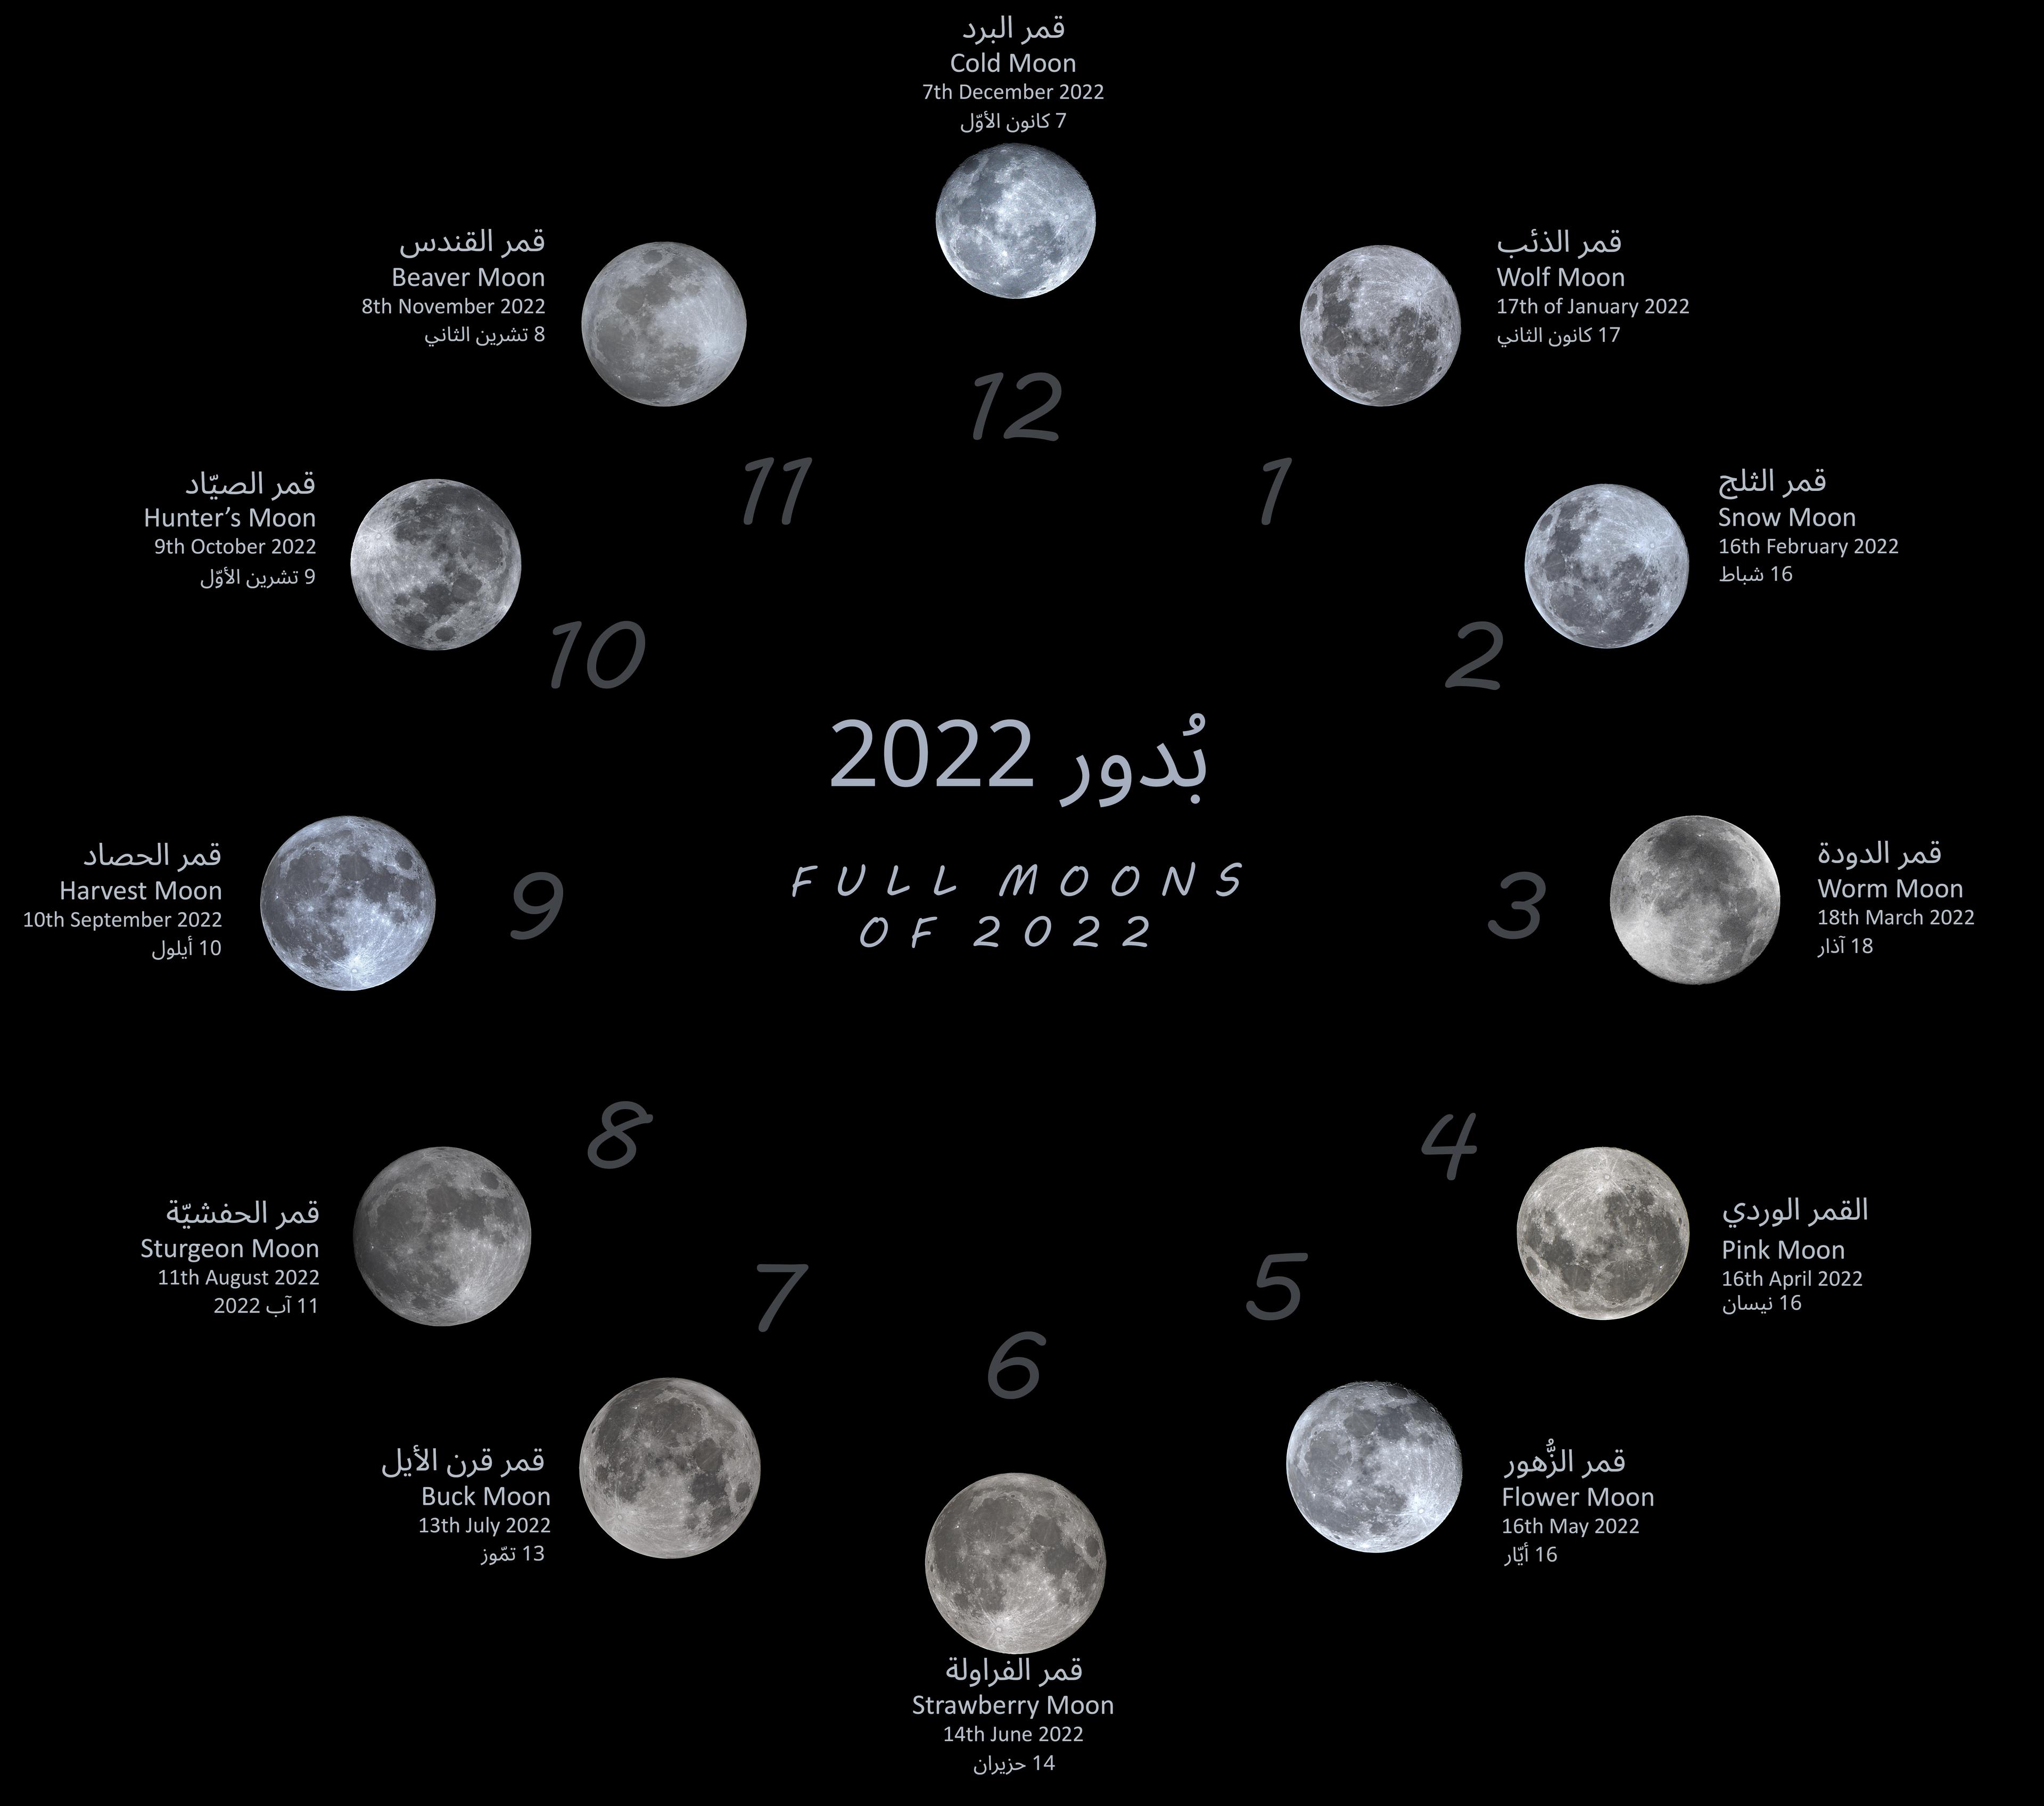 بدور 2022 الاثنا عشر مع تواريخها واسم تقليدي شائع لكلٍّ منها مُرتّبة على شكل ساعةٍ من 12 خانة.